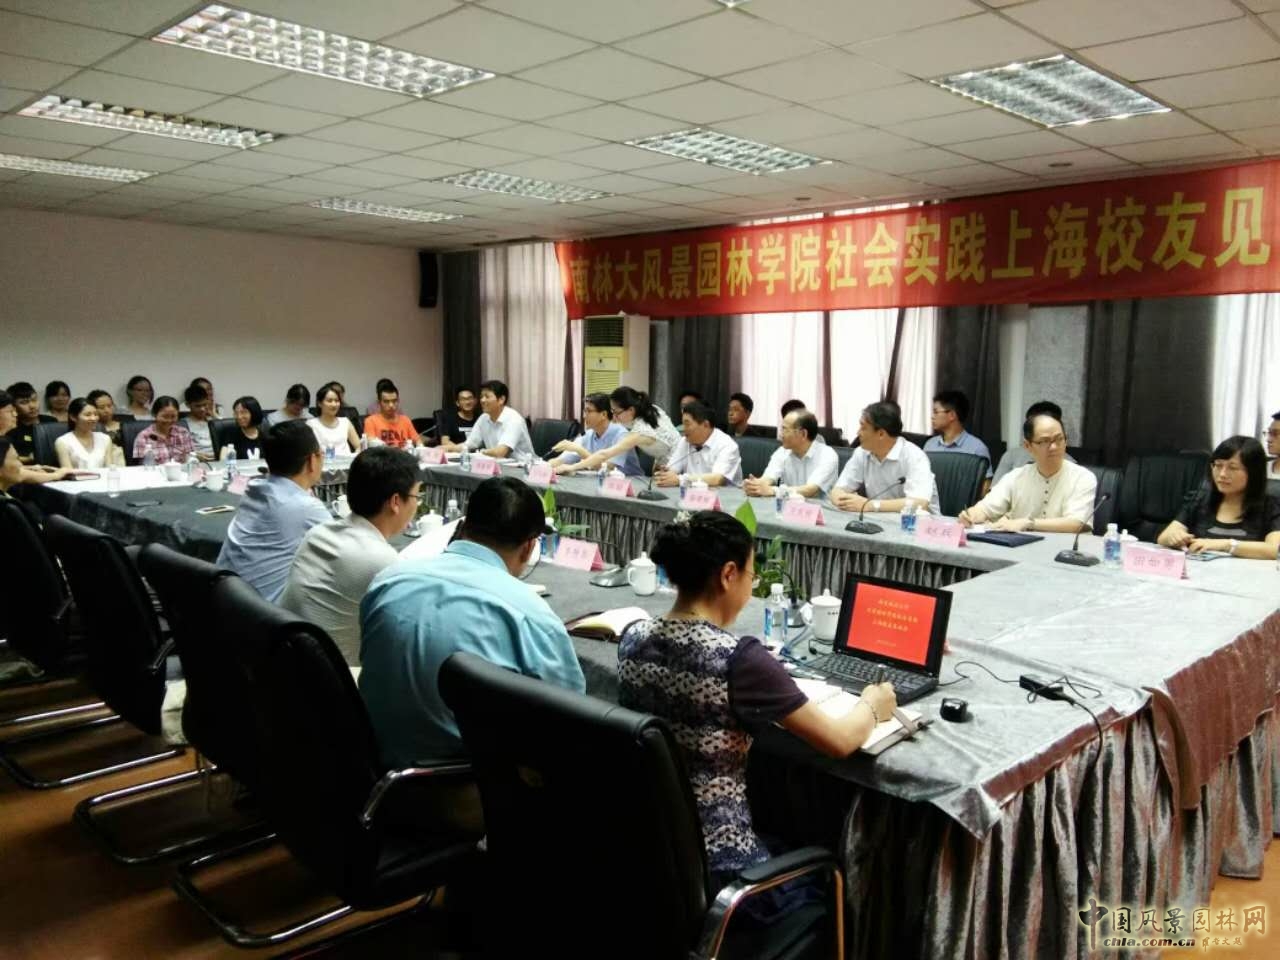 系列报道1：南林风景园林学院于上海启动社会实践活动